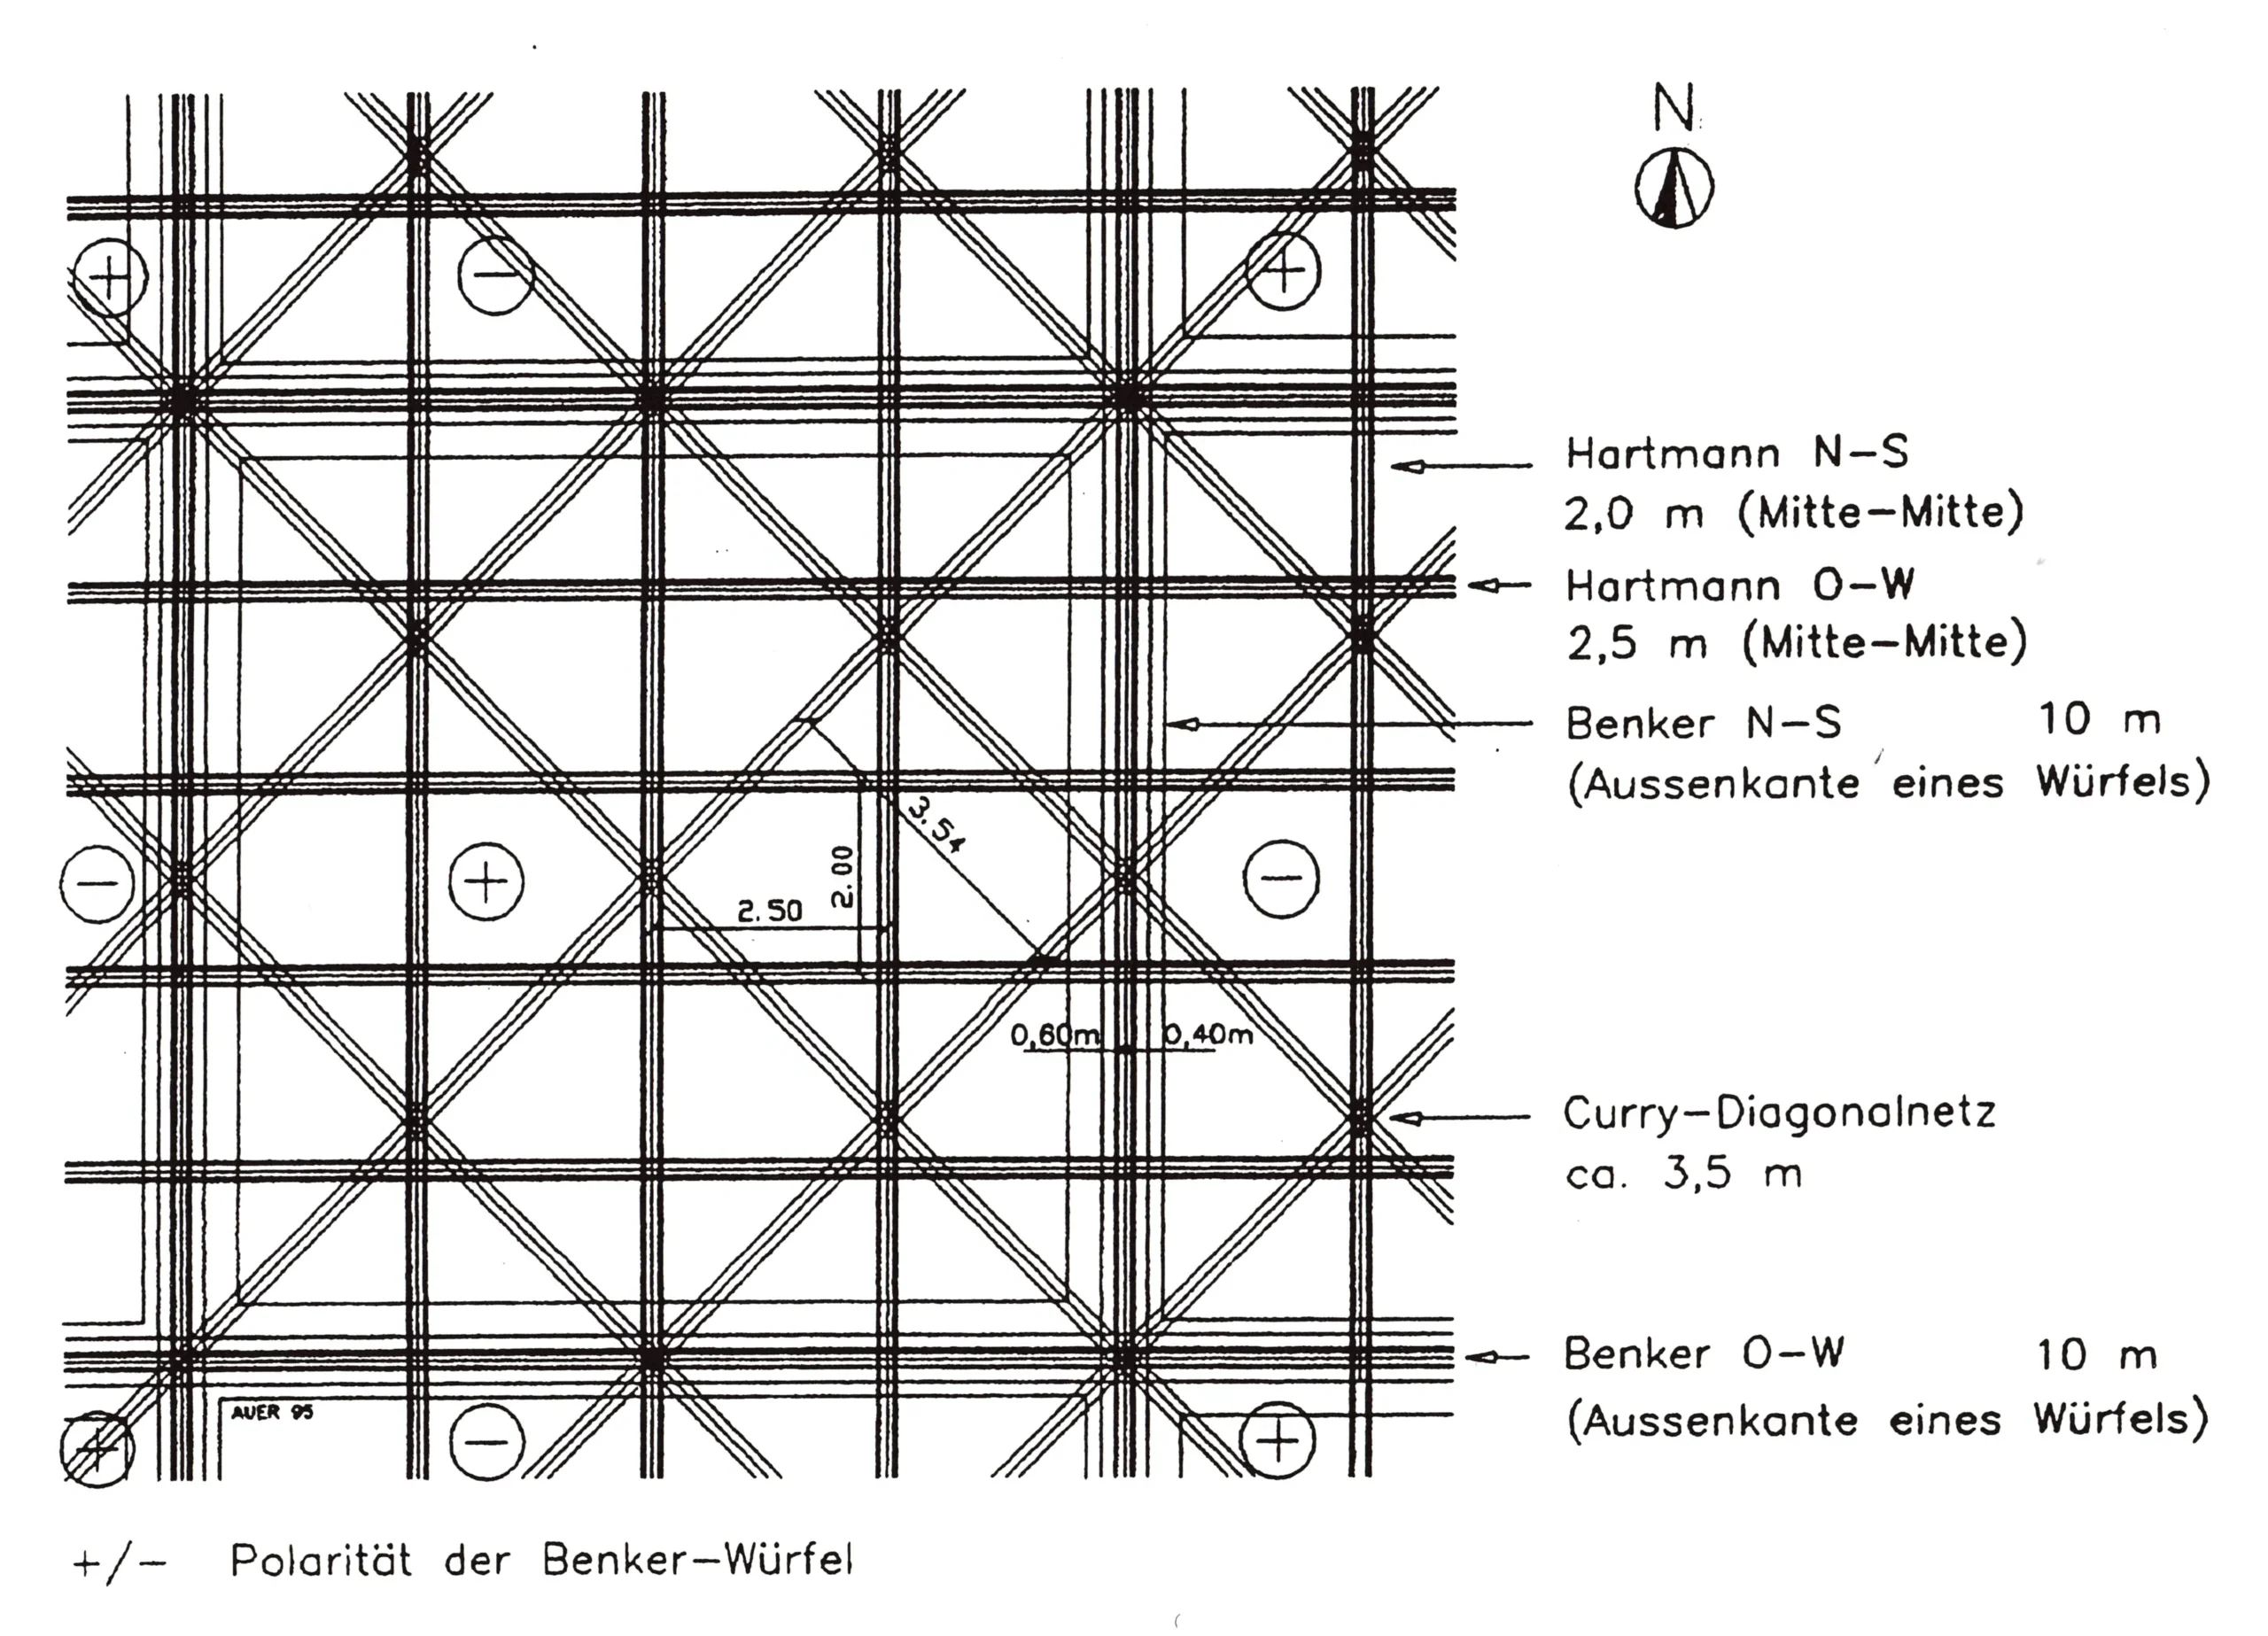 Draufsicht auf die verschiedenen Kreuzungen des Benker-, Hartmann- und Curry-Gitternetzes